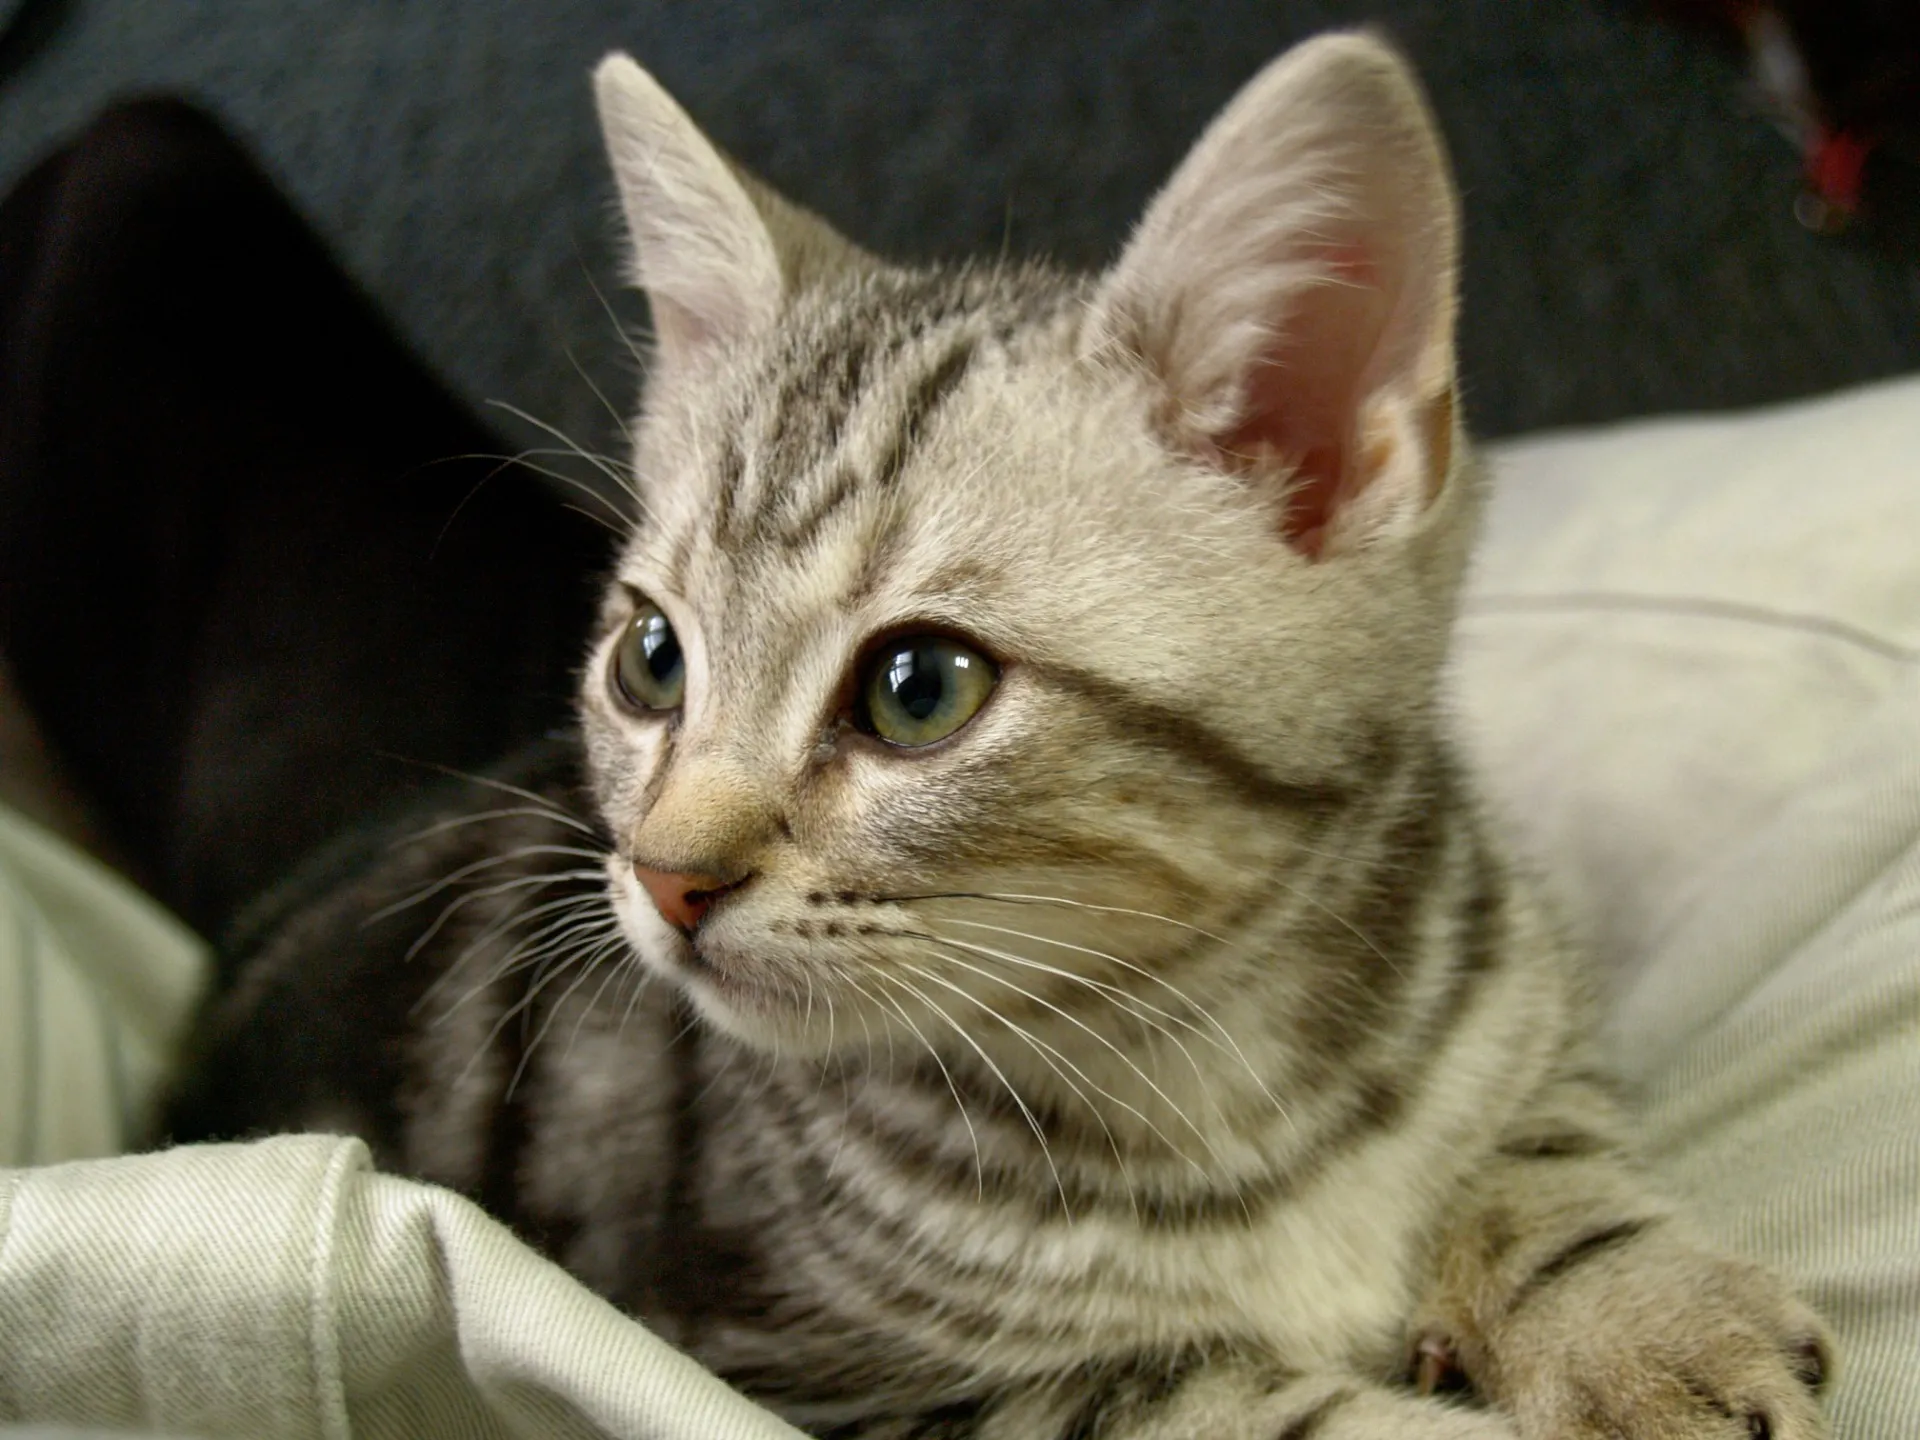 ネコの日から始めたスライドショー制作、以前飼っていたネコの写真を思い出にスライドショーの動画にしました